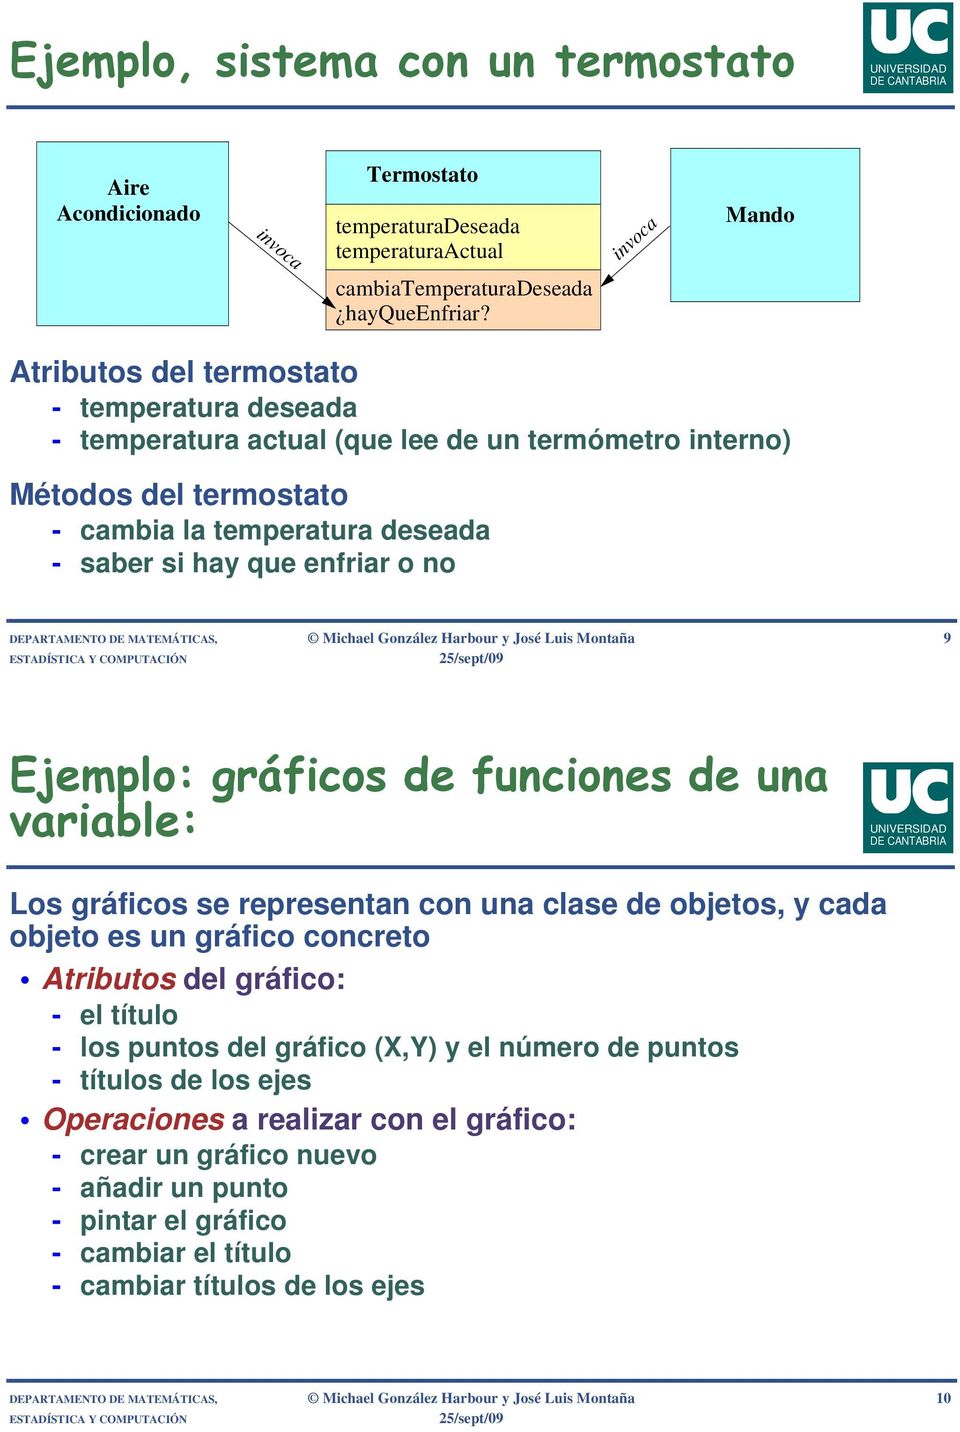 DEPARTAMENTO DE MATEMÁTICAS, Michael González Harbour y José Luis Montaña 9 Ejemplo: gráficos de funciones de una variable: Los gráficos se representan con una clase de objetos, y cada objeto es un